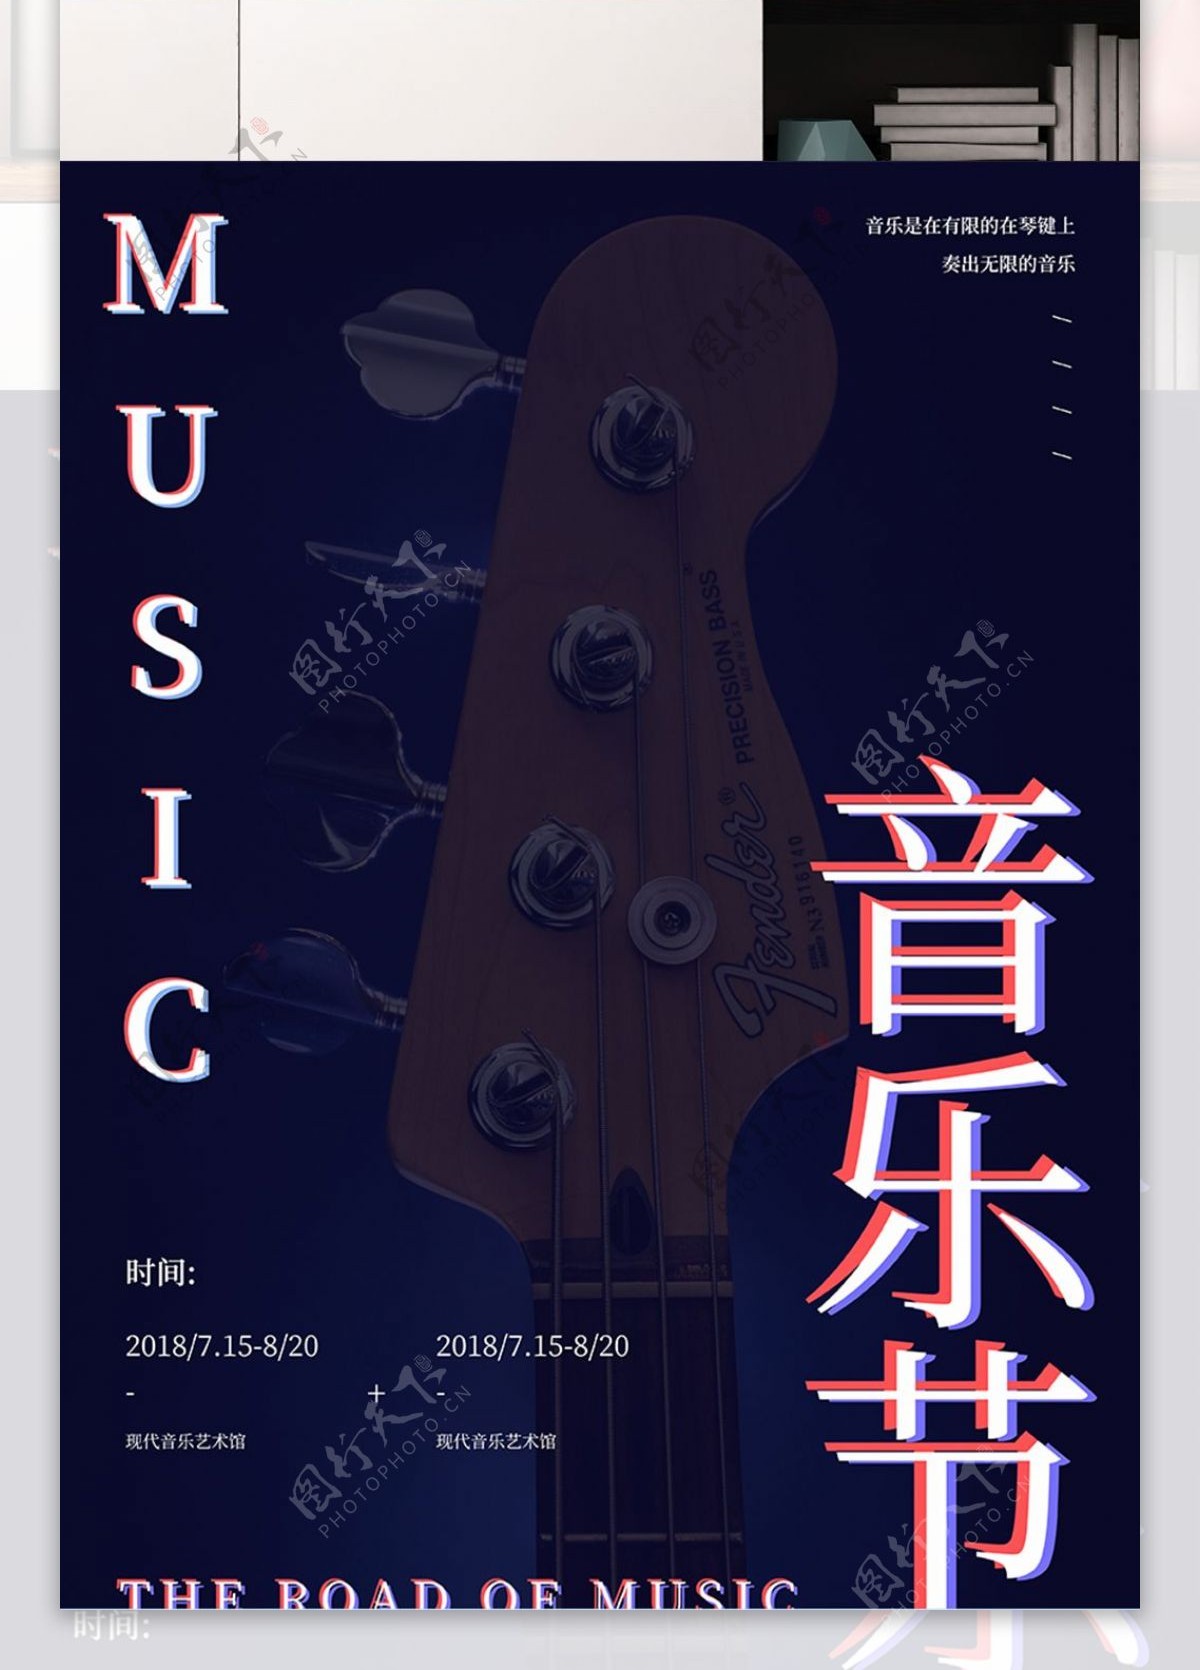 创意音乐节节日宣传海报